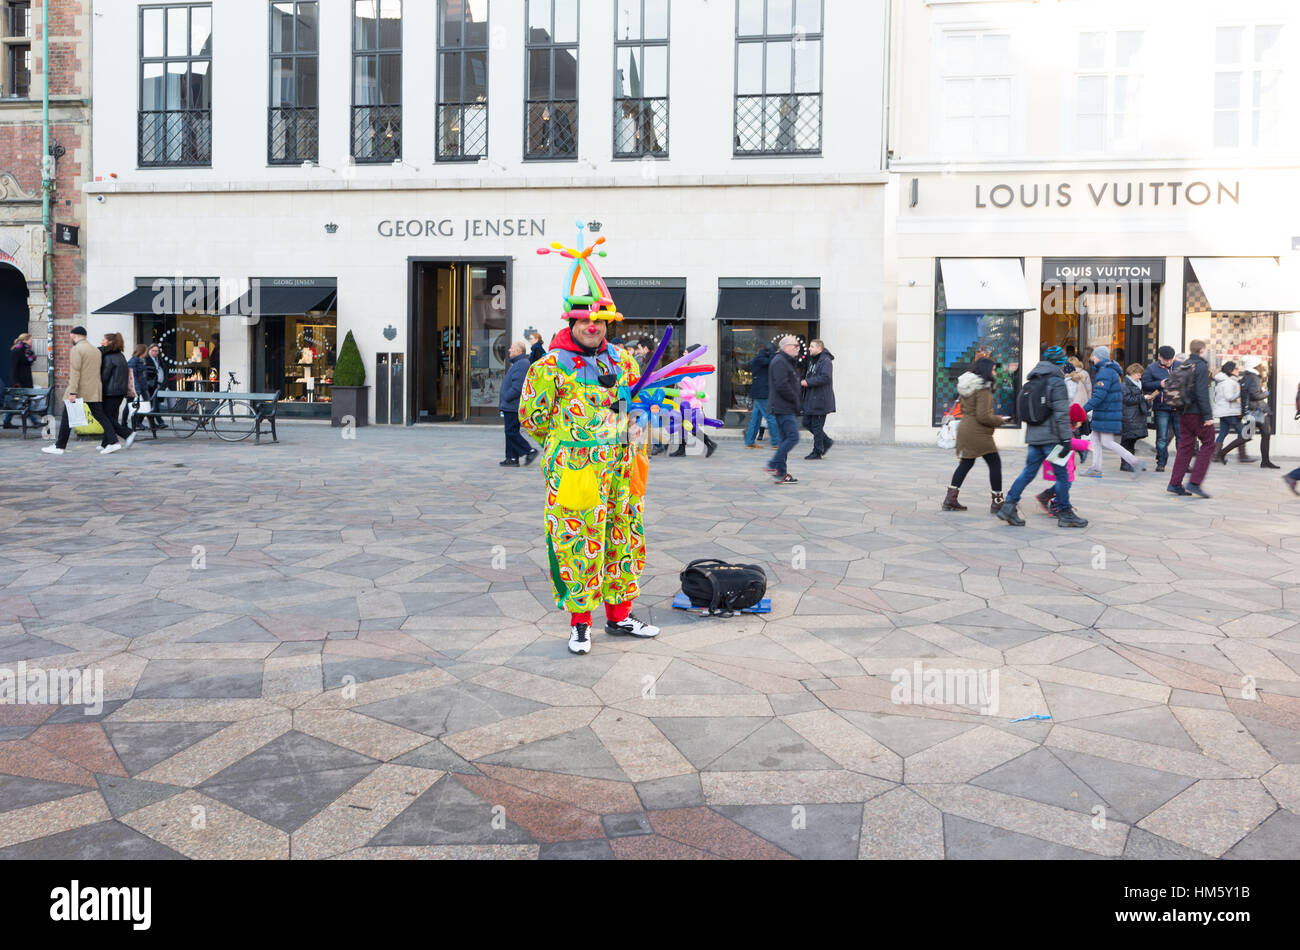 Vendeur de ballons clown sur StrØget, Copenhague, Danemark Banque D'Images